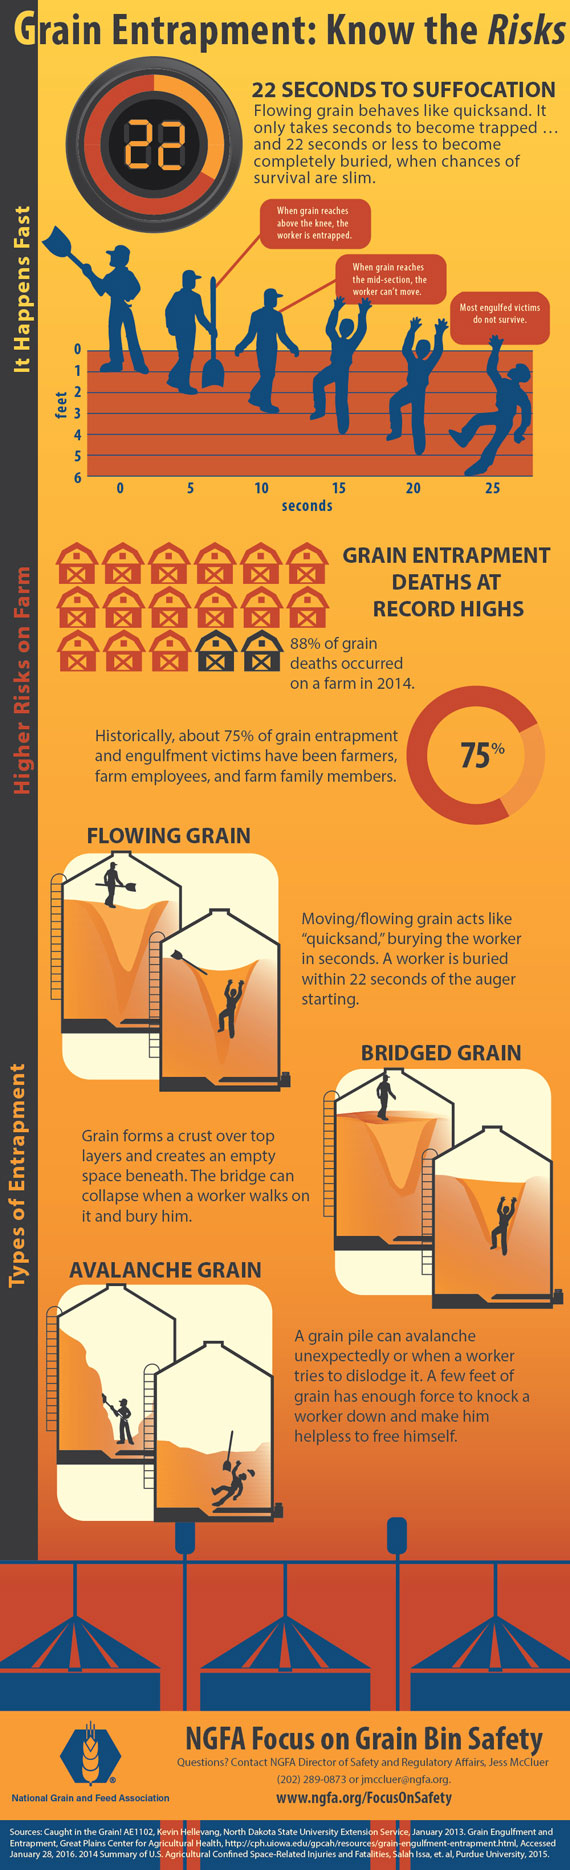 grain bin safety infographic